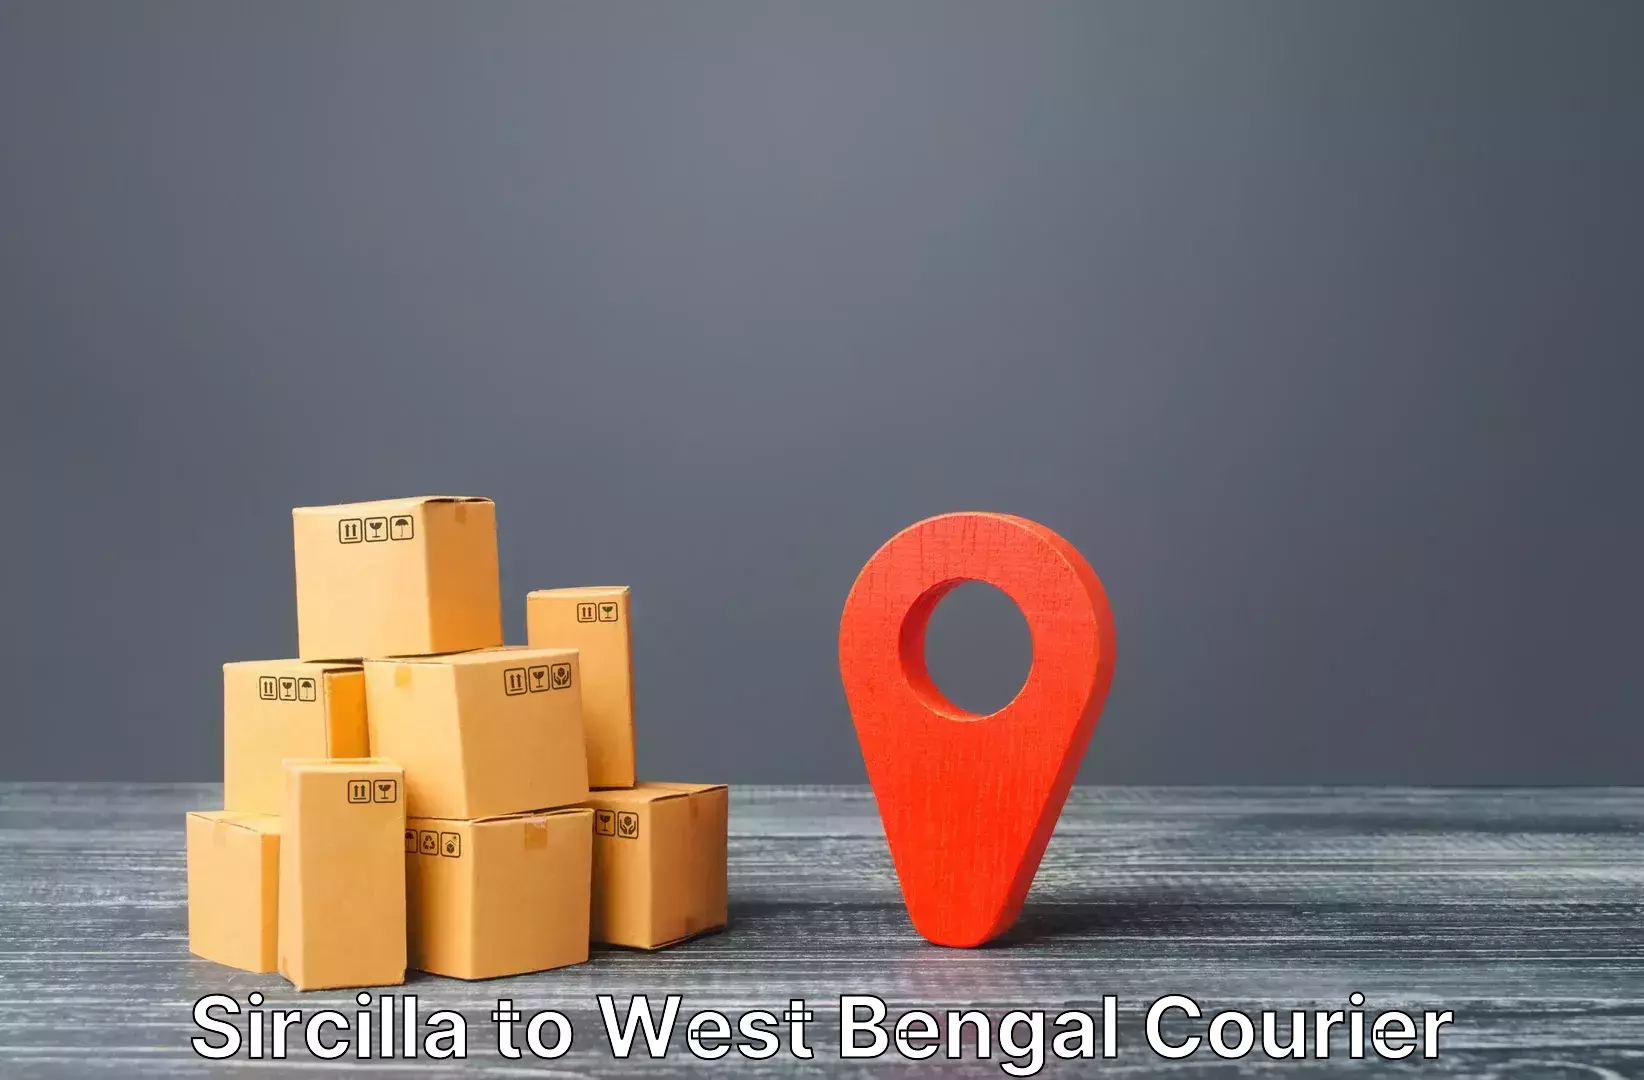 Luggage delivery app Sircilla to Darjeeling